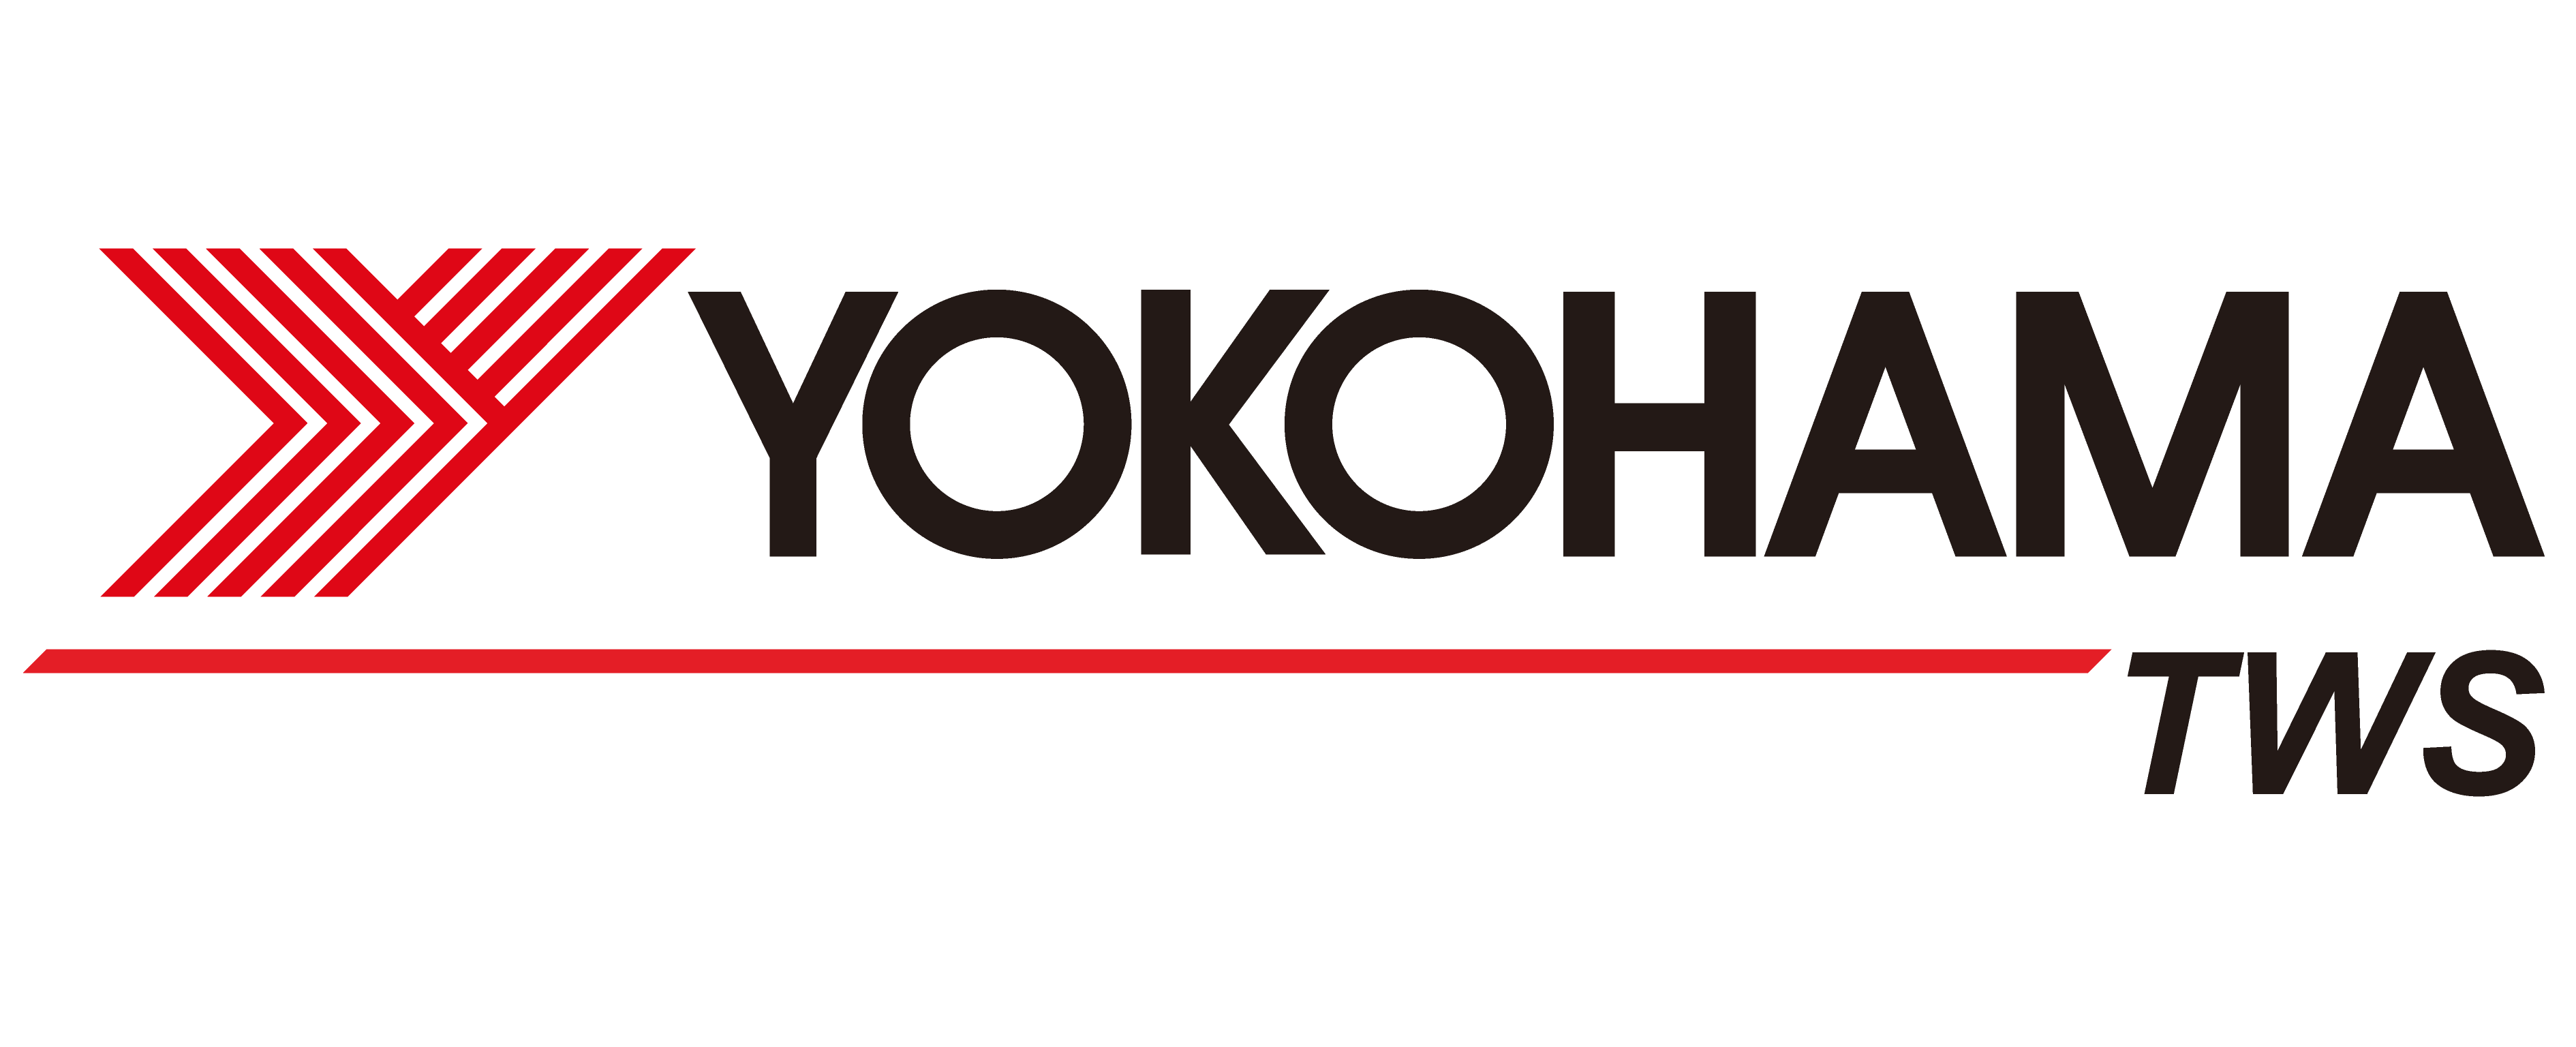 Yokohama шины тесты